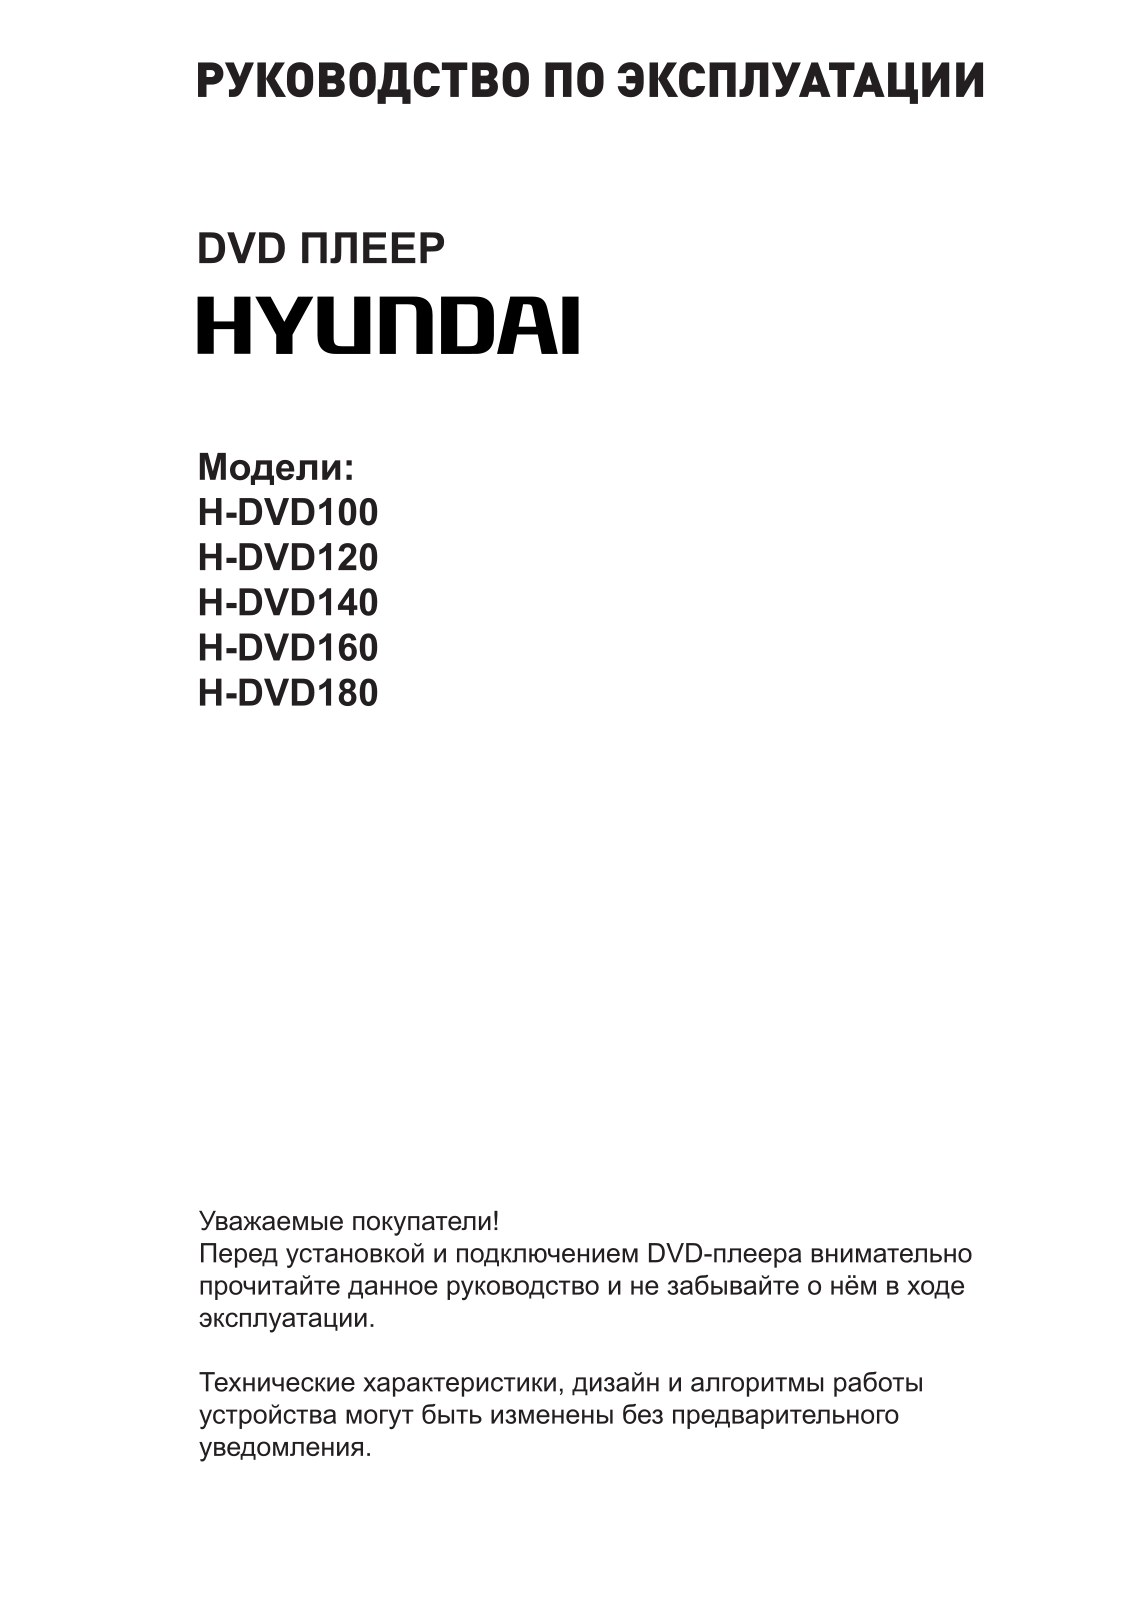 Hyundai H-DVD160 User Manual